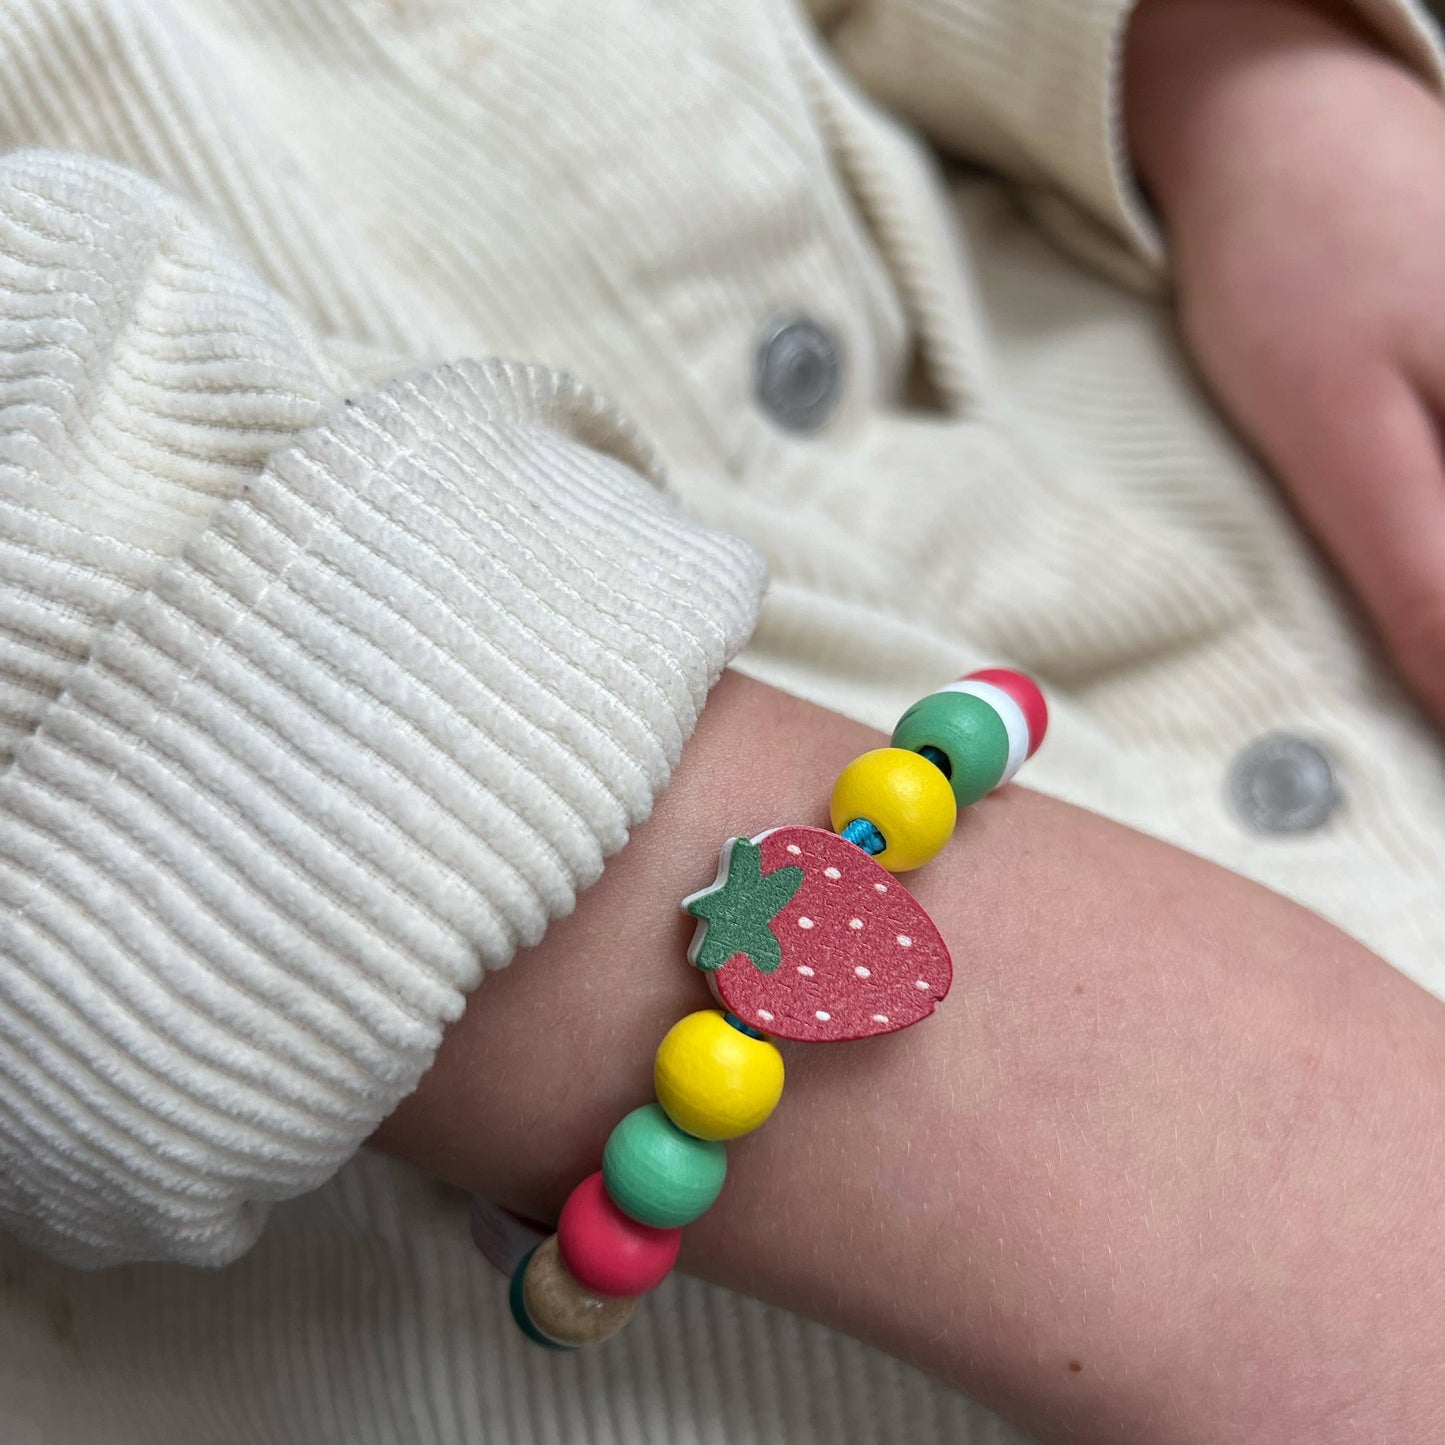 Strawberry Bracelet Gift Kit